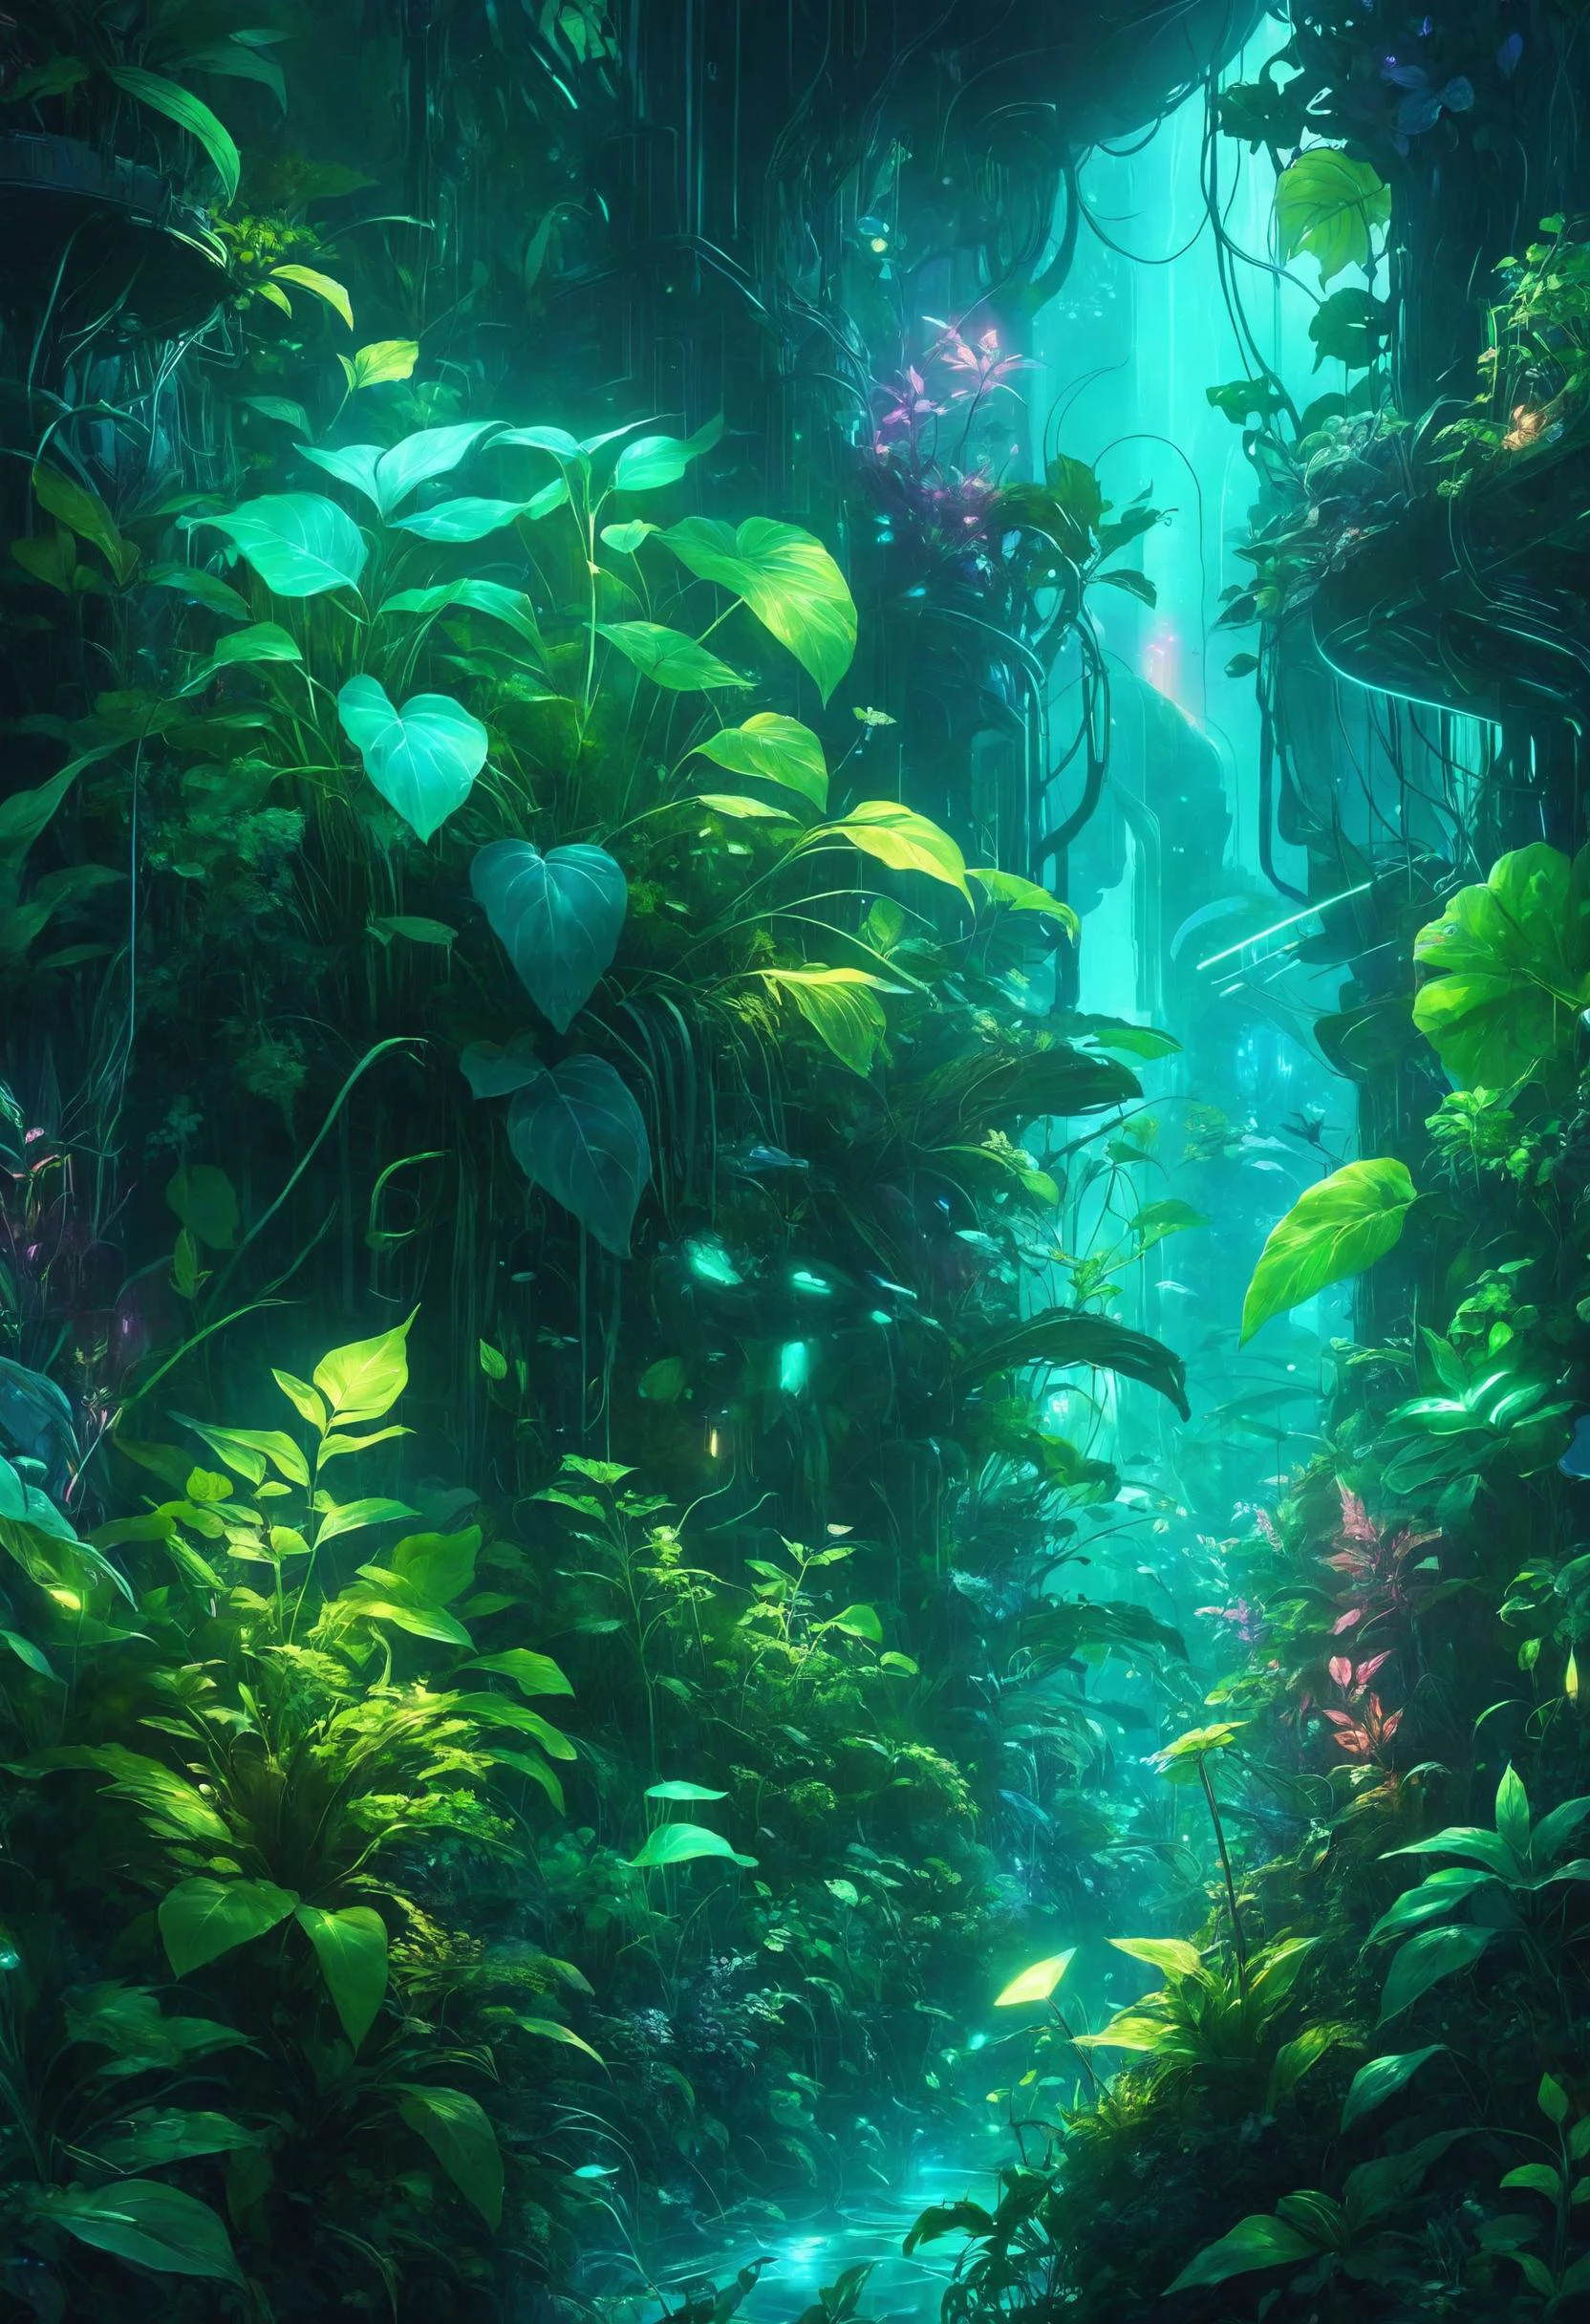 Un fascinante bosque submarino donde el follaje bioluminiscente de plantas translúcidas pulsa suavemente, creando una encantadora danza de luces y sombras, Detective Cyberpunk en un paisaje urbano iluminado con luces de neón en primer plano., Estilo artístico Dreamyvibes, 